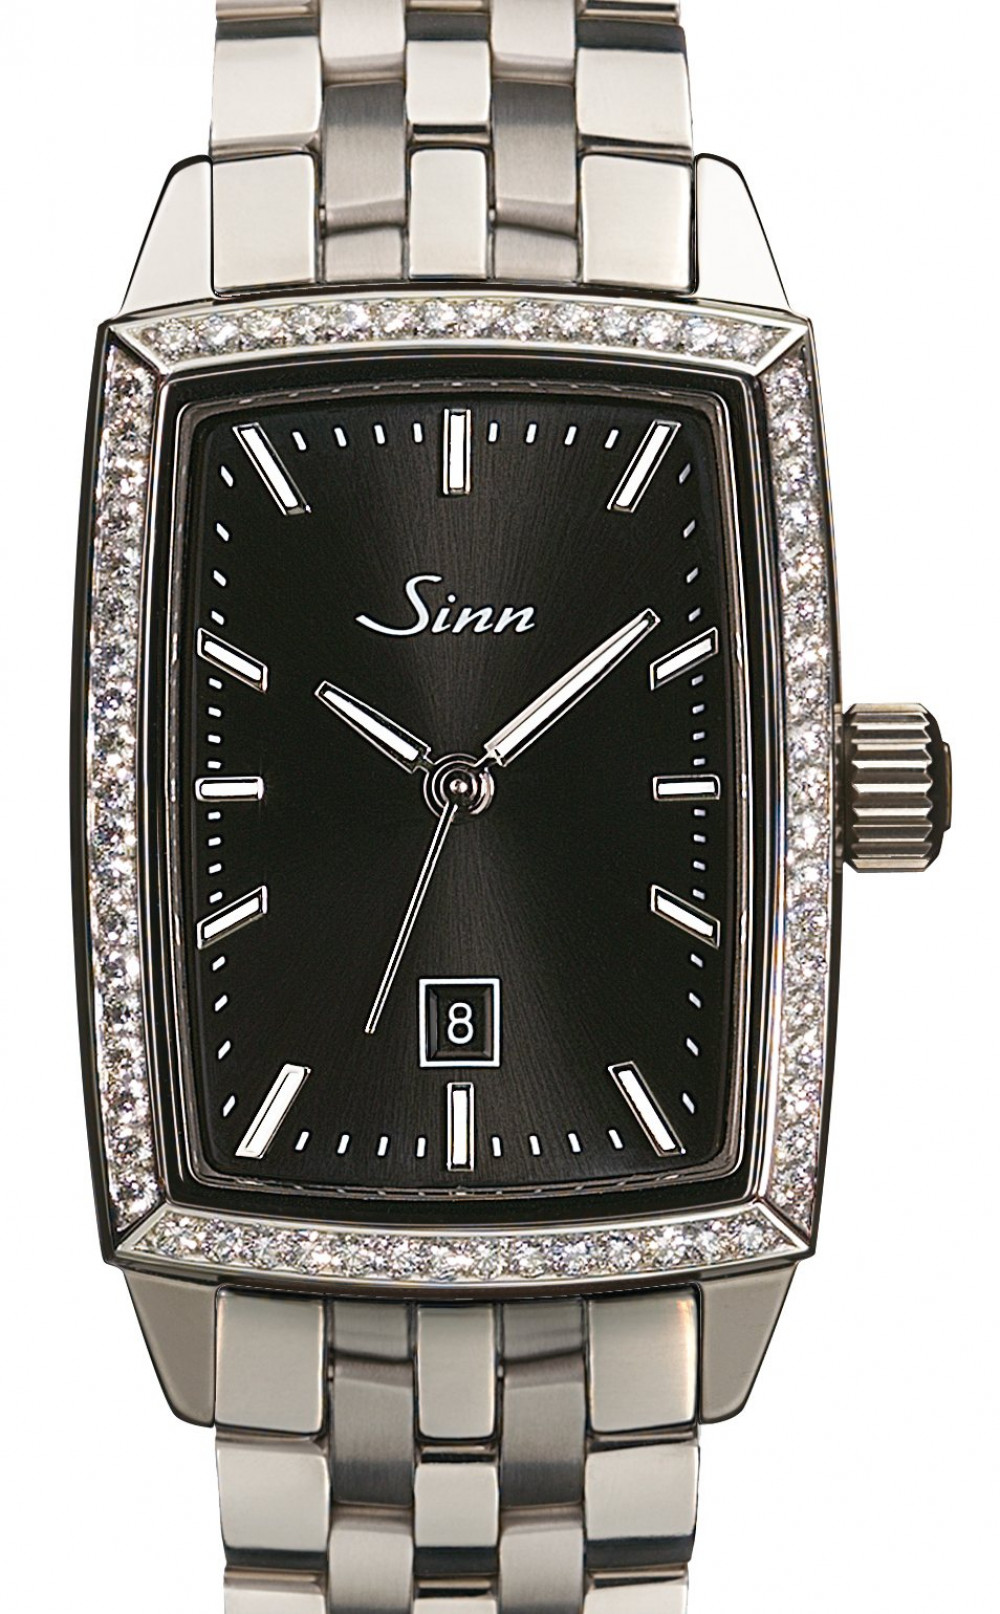 Zegarek firmy Sinn, model 243 TW66 WG S